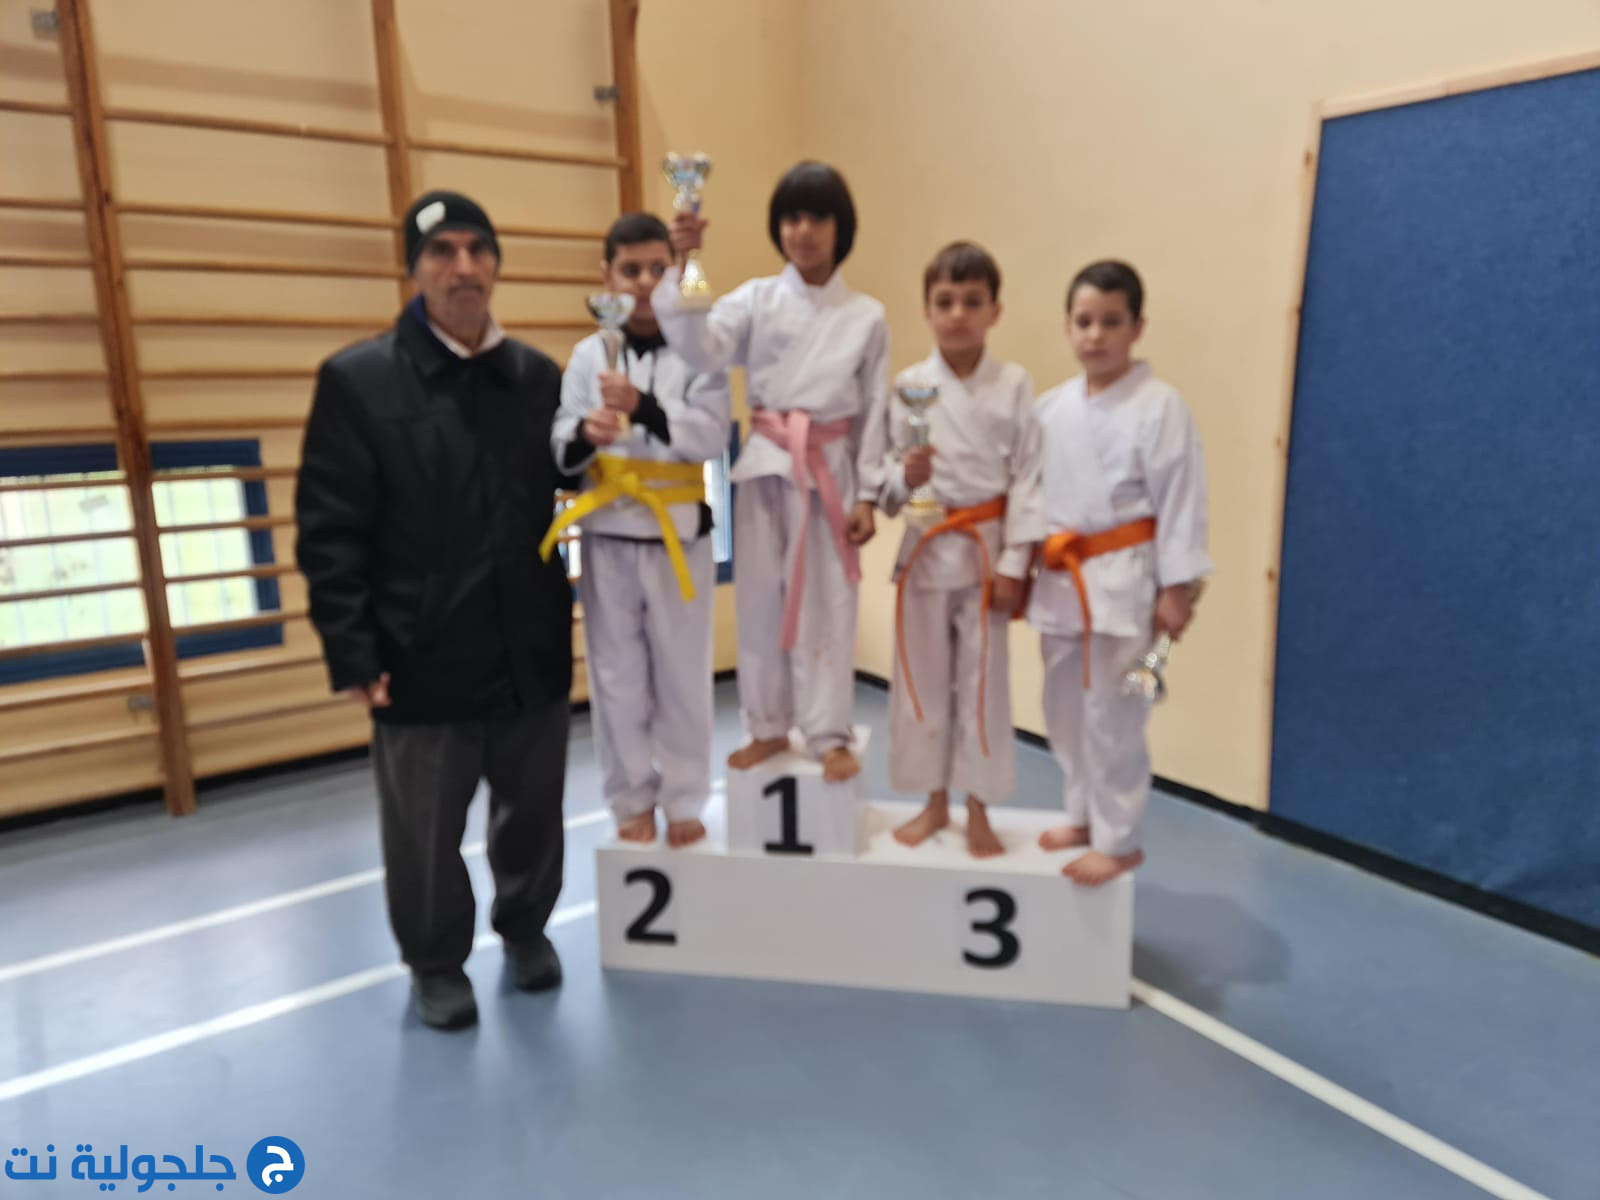 مدرسة الكراتيه القطرية Hosni kai karate تختتم بطولة الطيرة على اسم سهى منصور